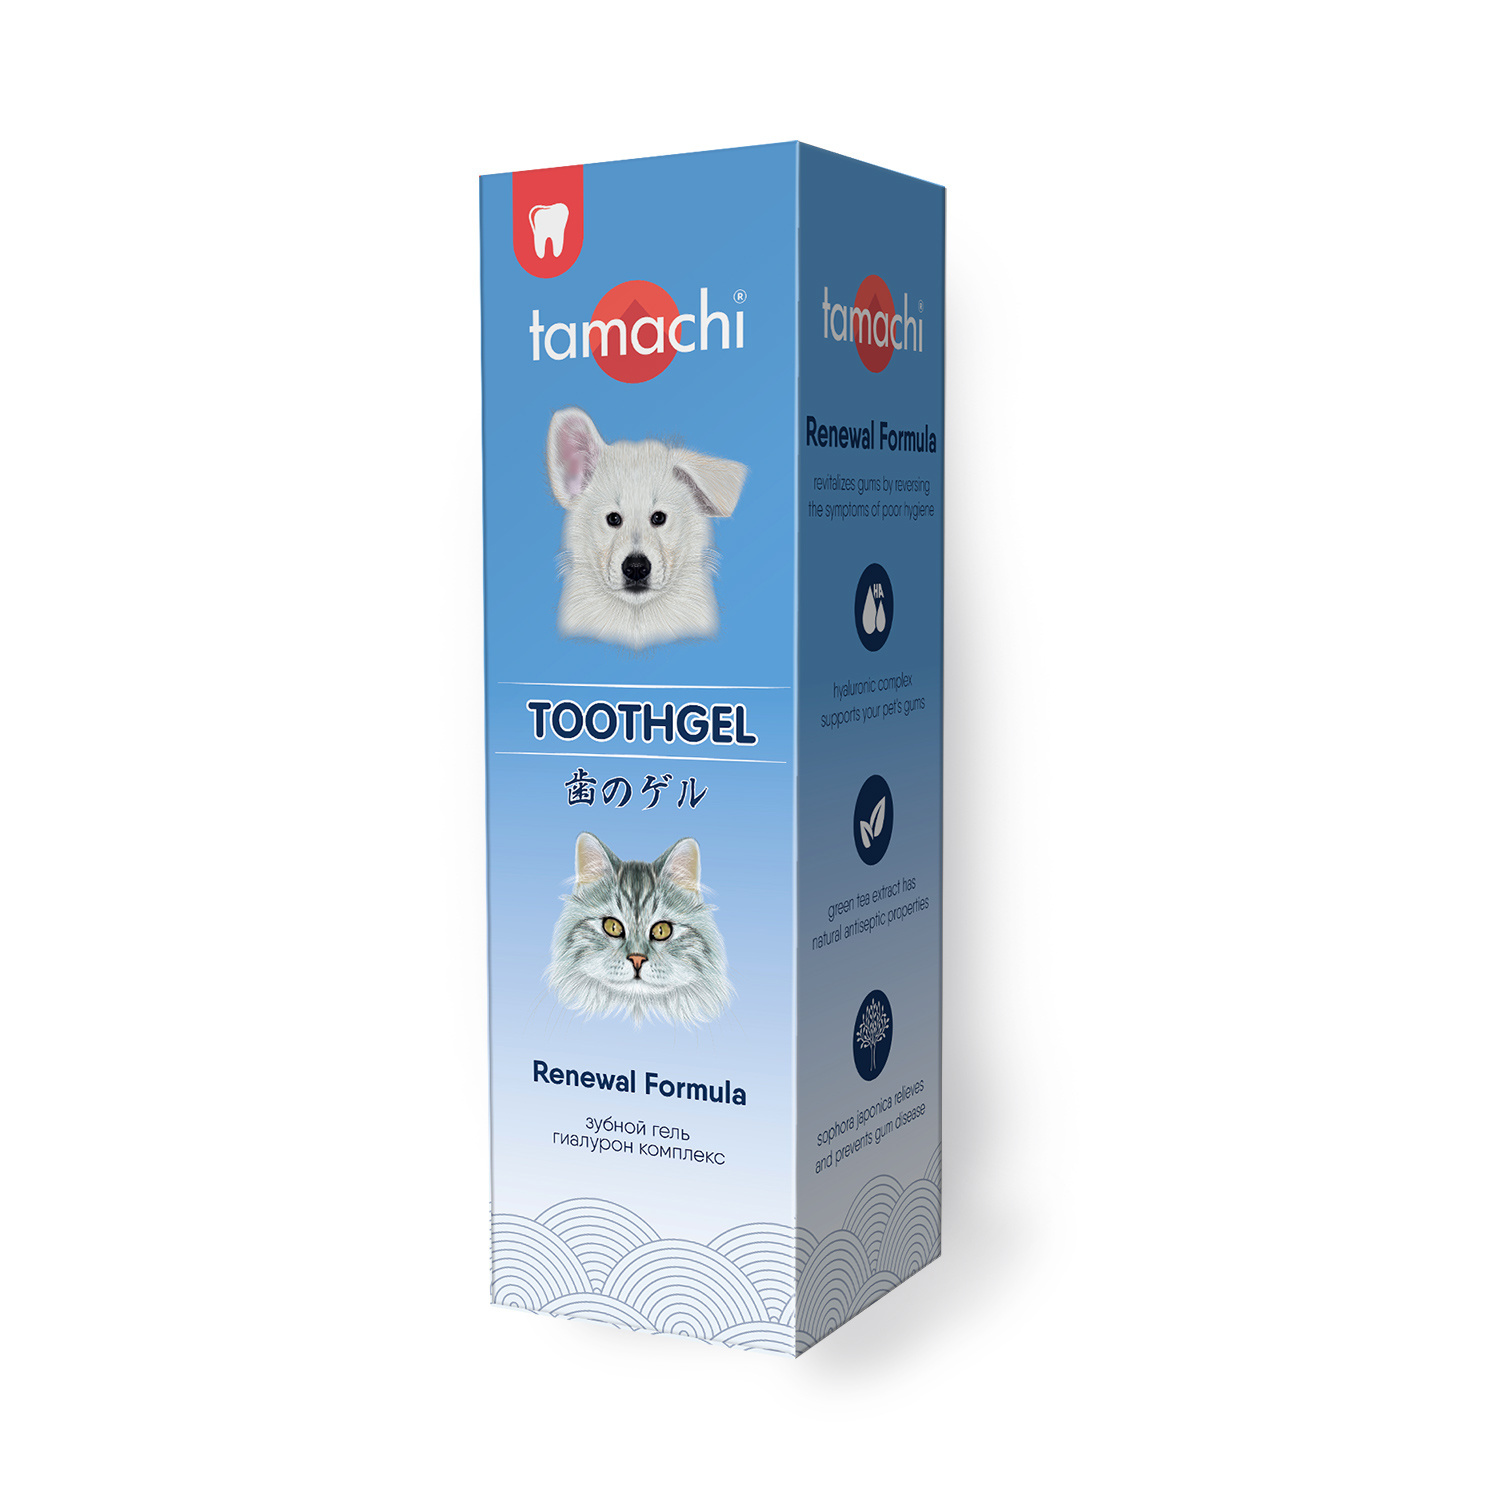 цена Tamachi Tamachi зубной гель (100 мл)